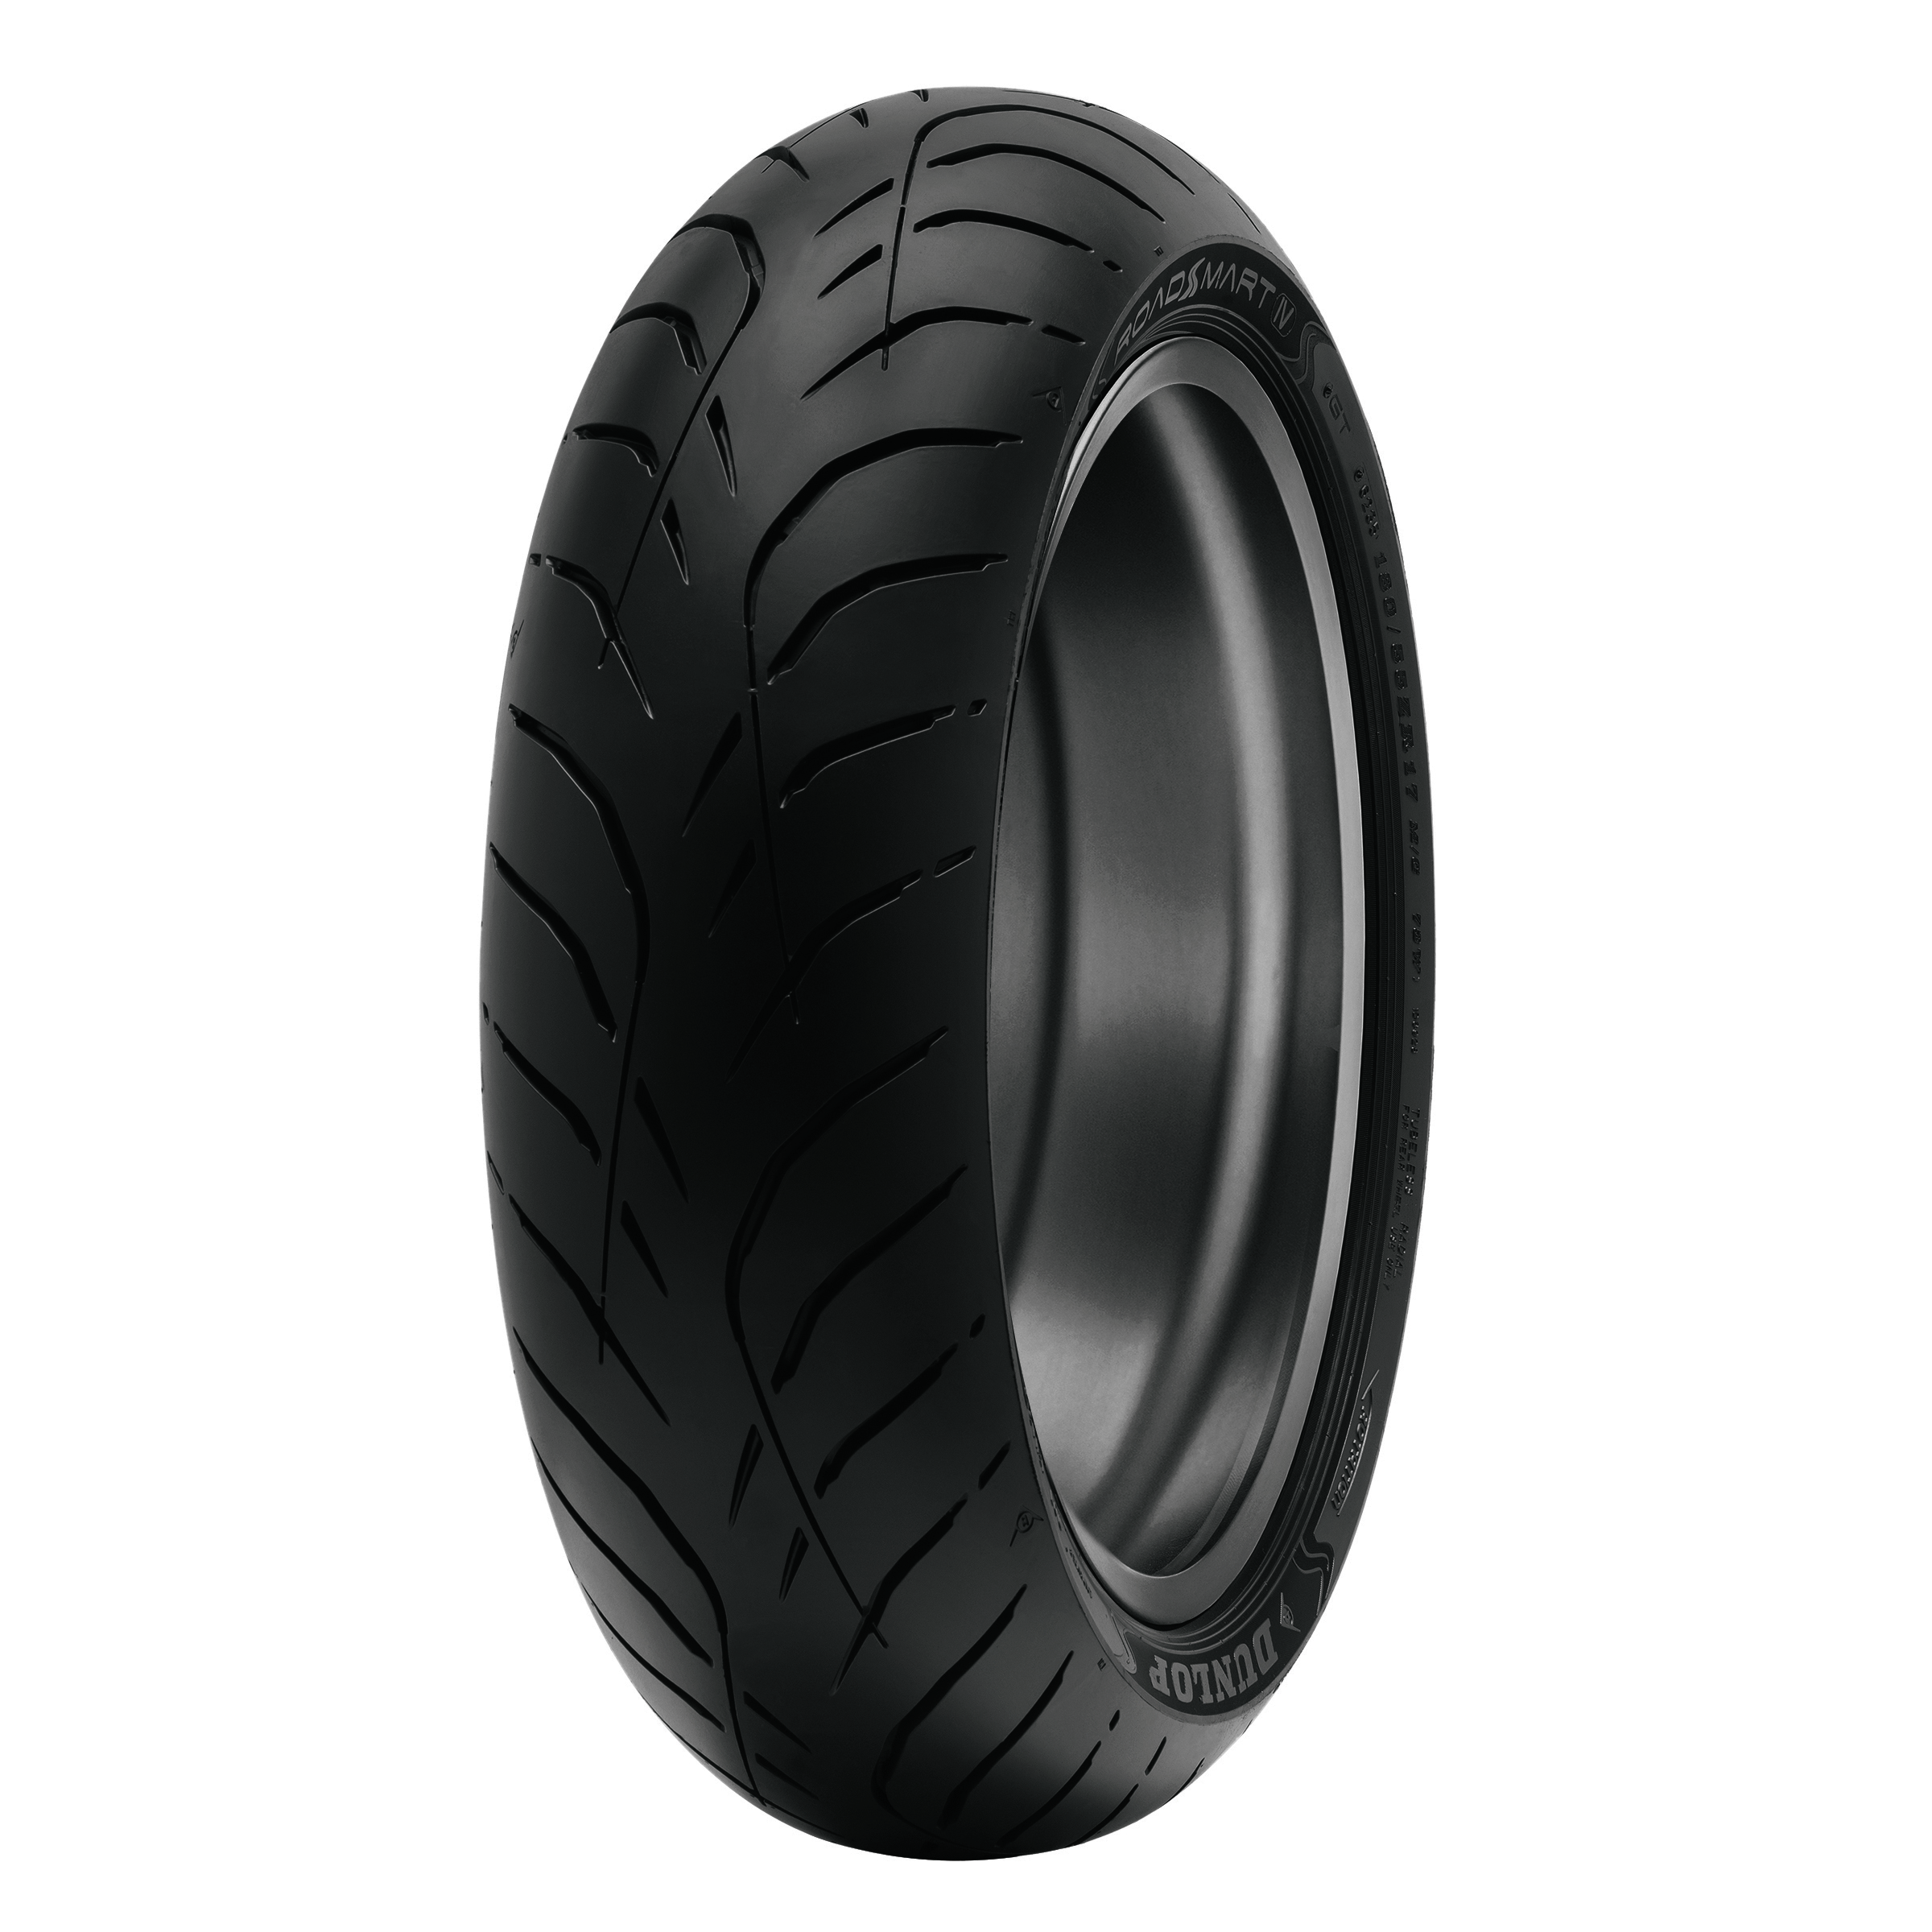 Dunlop - Tire Roadsmart Iv Rear 160/60zr17 (69w) Tl - 45253302